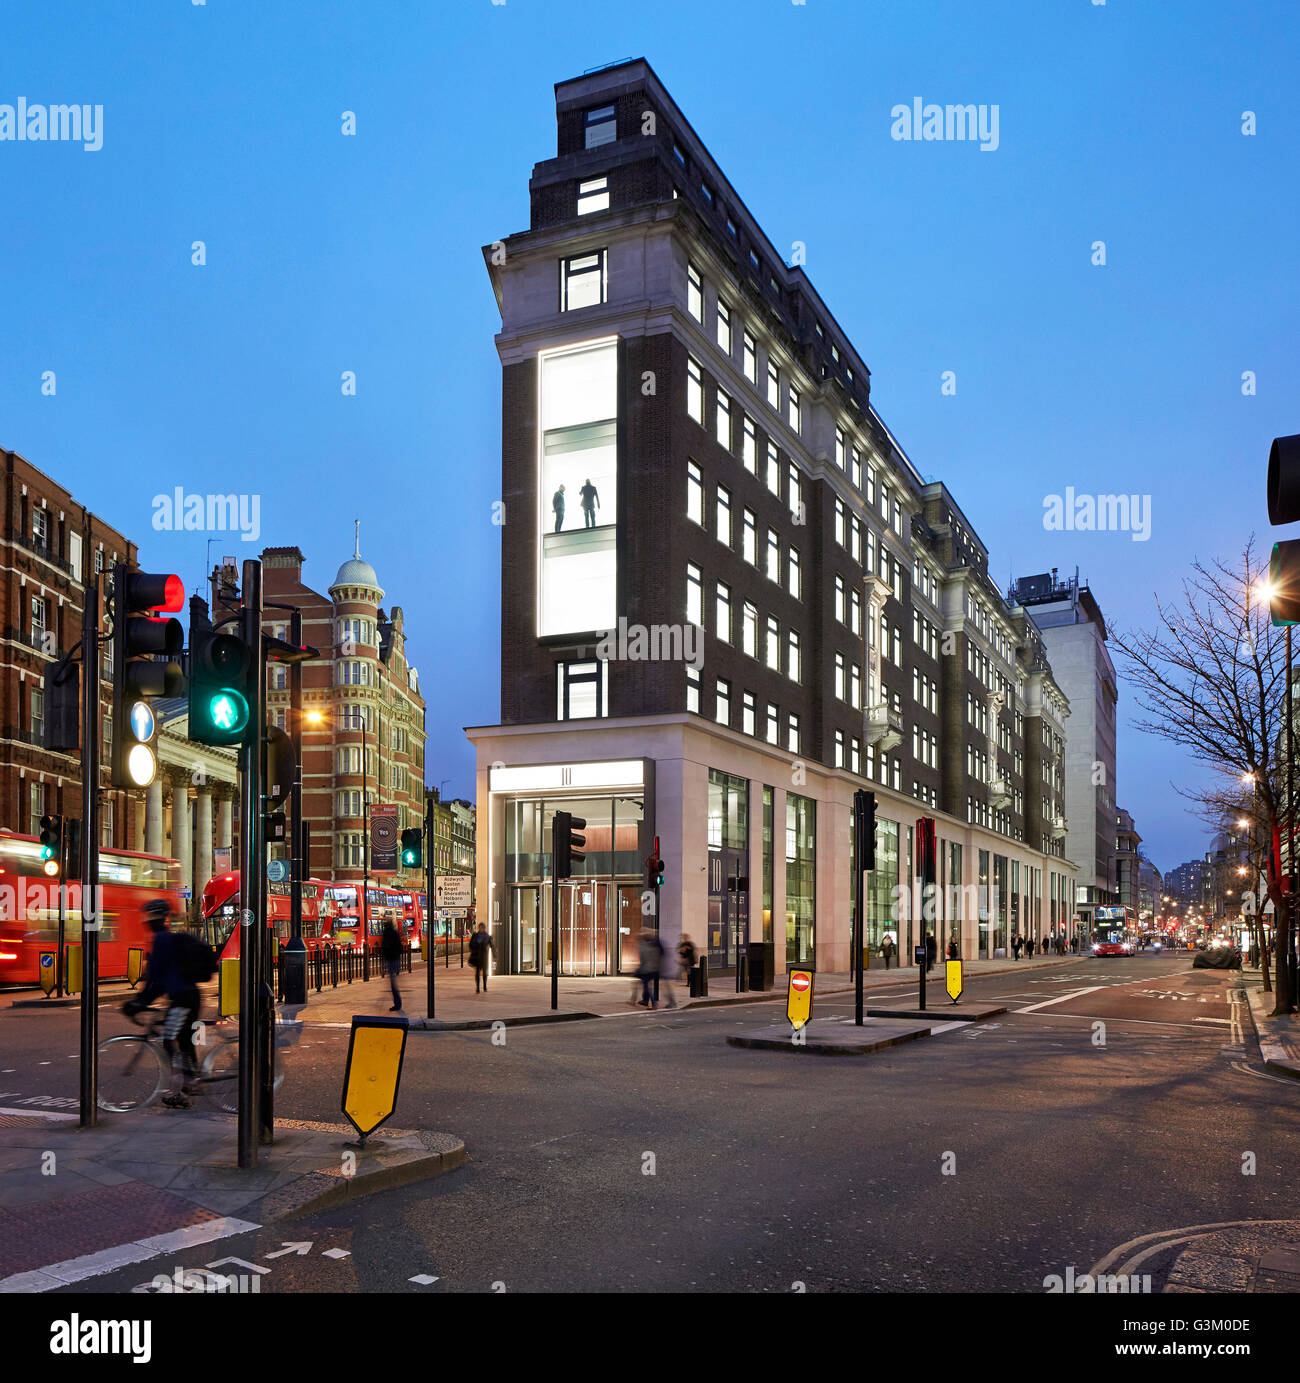 Nacht-Erhebung mit Kreuzung und belebten Londoner Straße. Bloomsbury Way, London, Vereinigtes Königreich. Architekt: BuckleyGrayYeoman Stockfoto